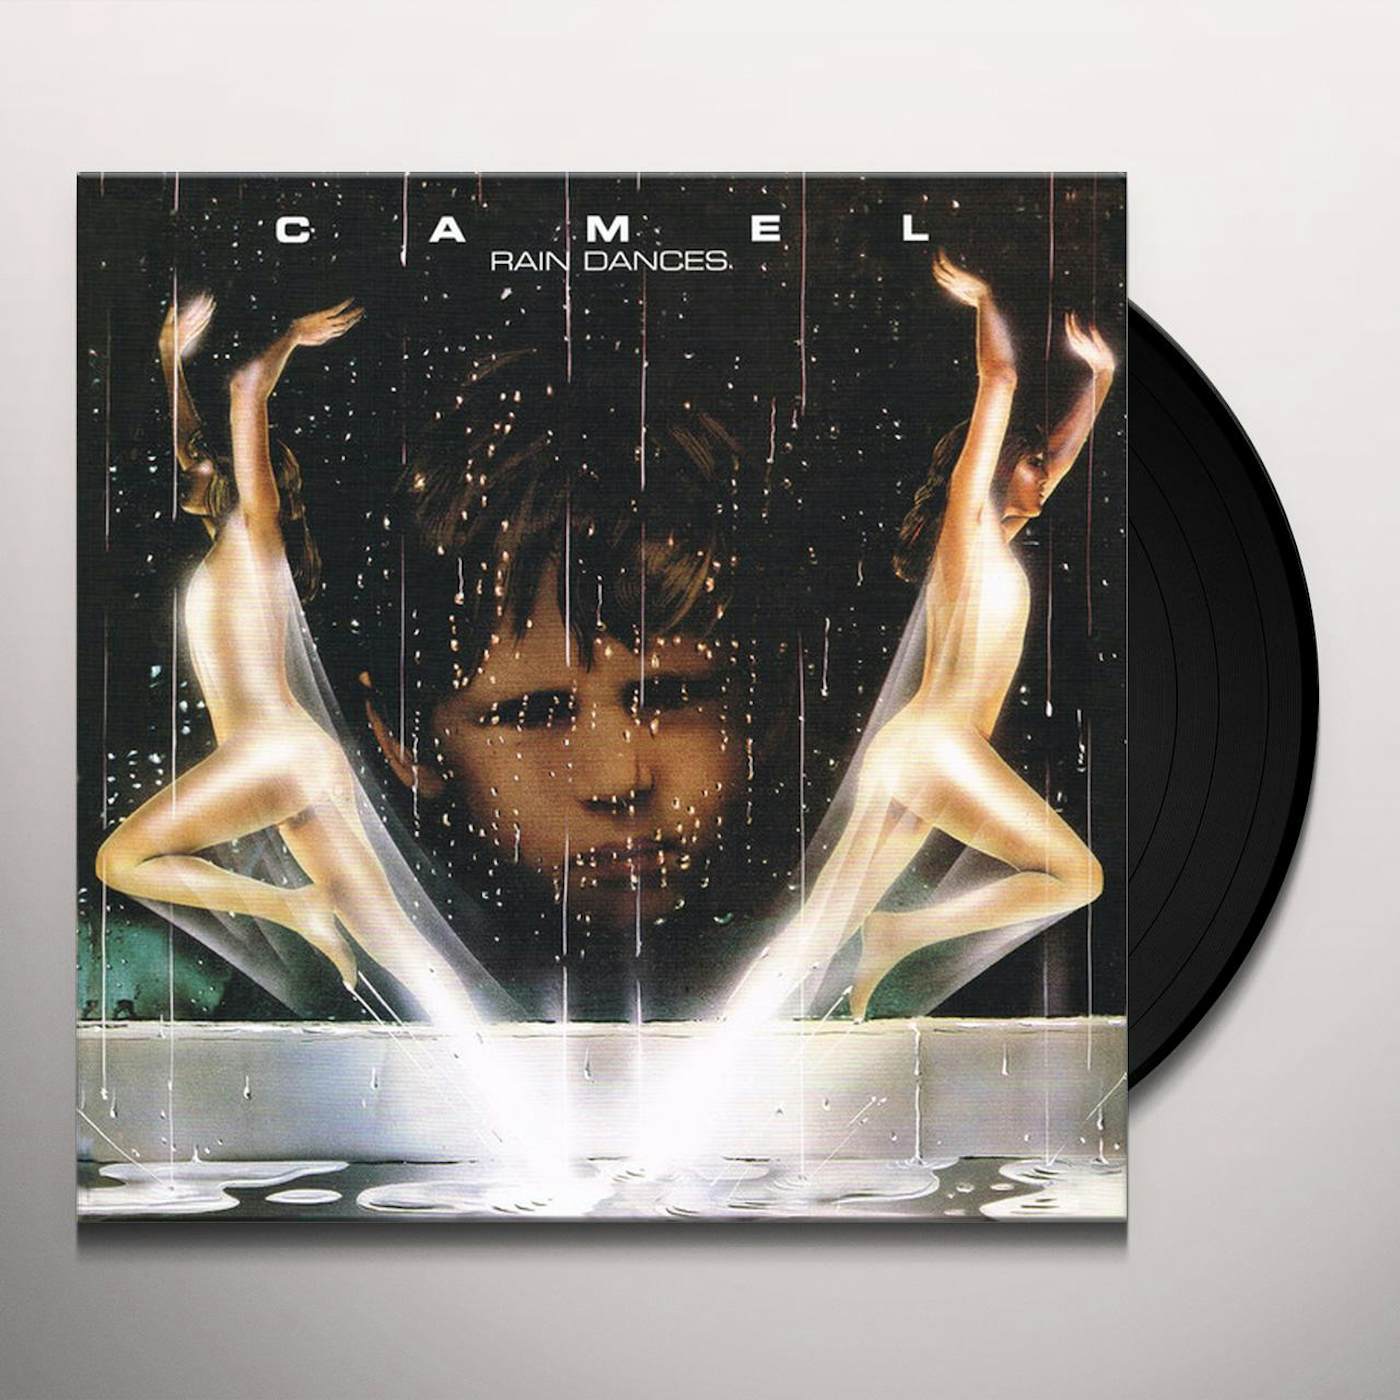 Camel Rain Dances Vinyl Record